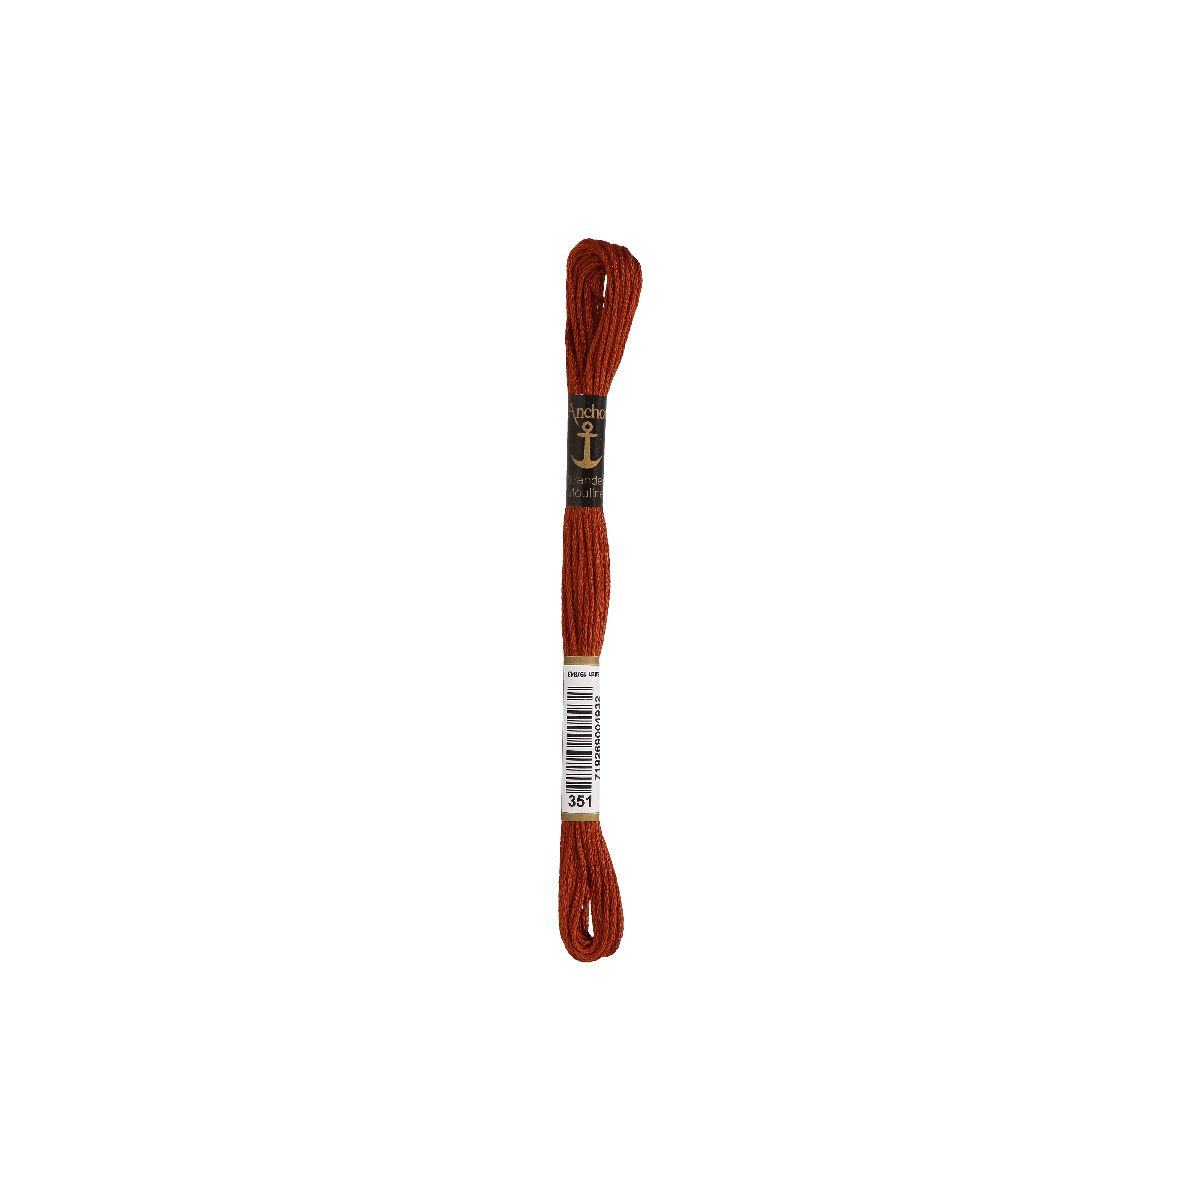 Anchor Sticktwist 8m, marrone rossastro, cotone, colore...